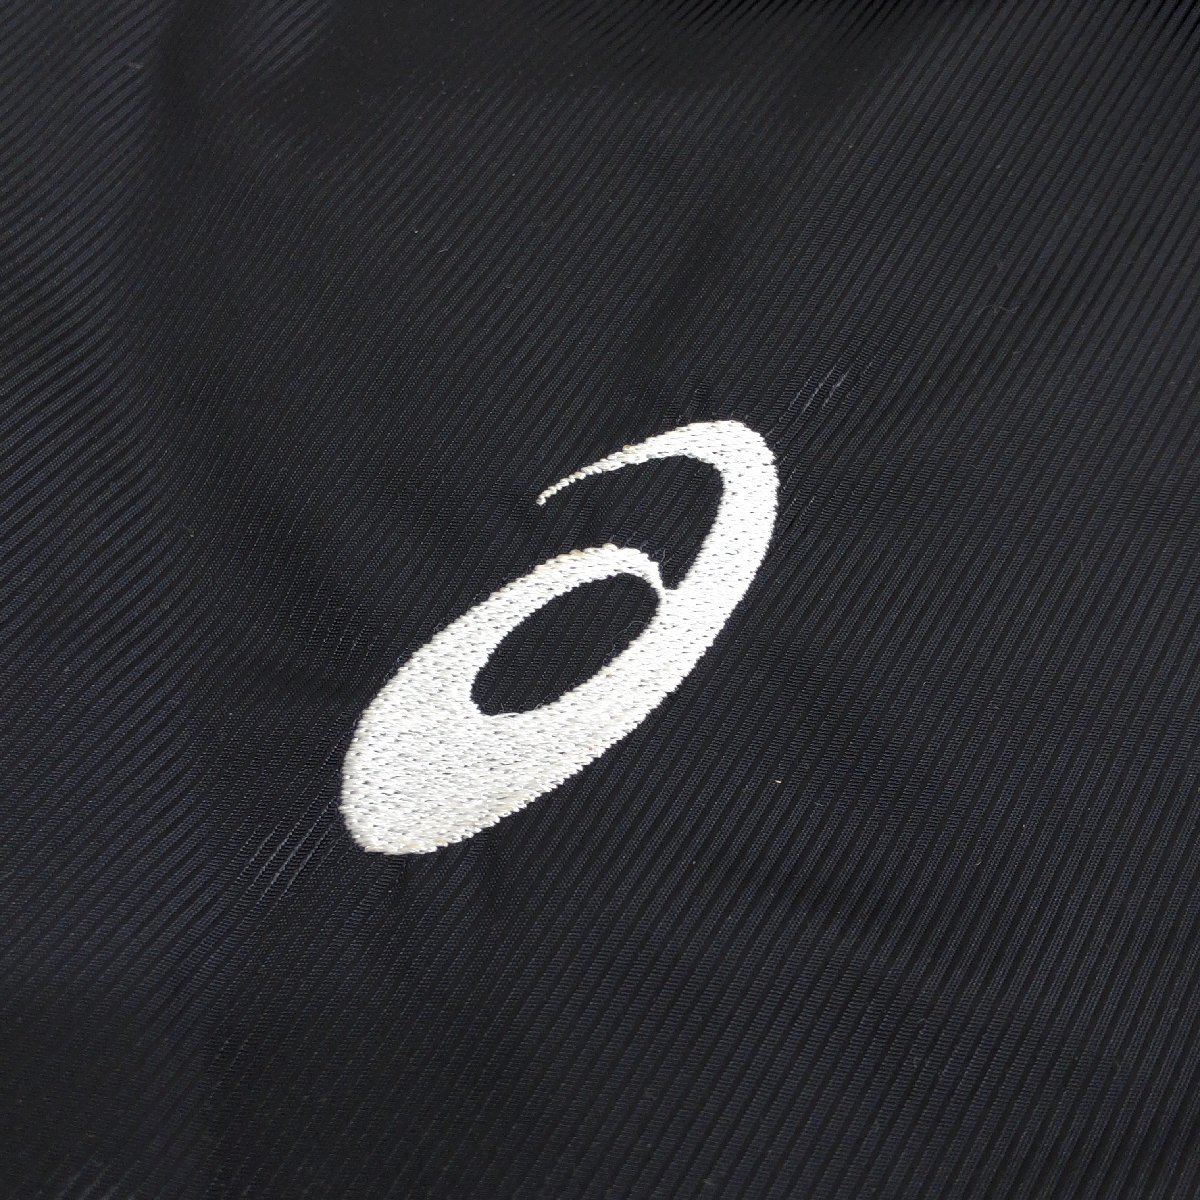 * прекрасный товар ASICS Asics Logo вышивка с хлопком bench пальто M чёрный черный полупальто спорт . битва отвечающий . внутренний стандартный товар мужской джентльмен 